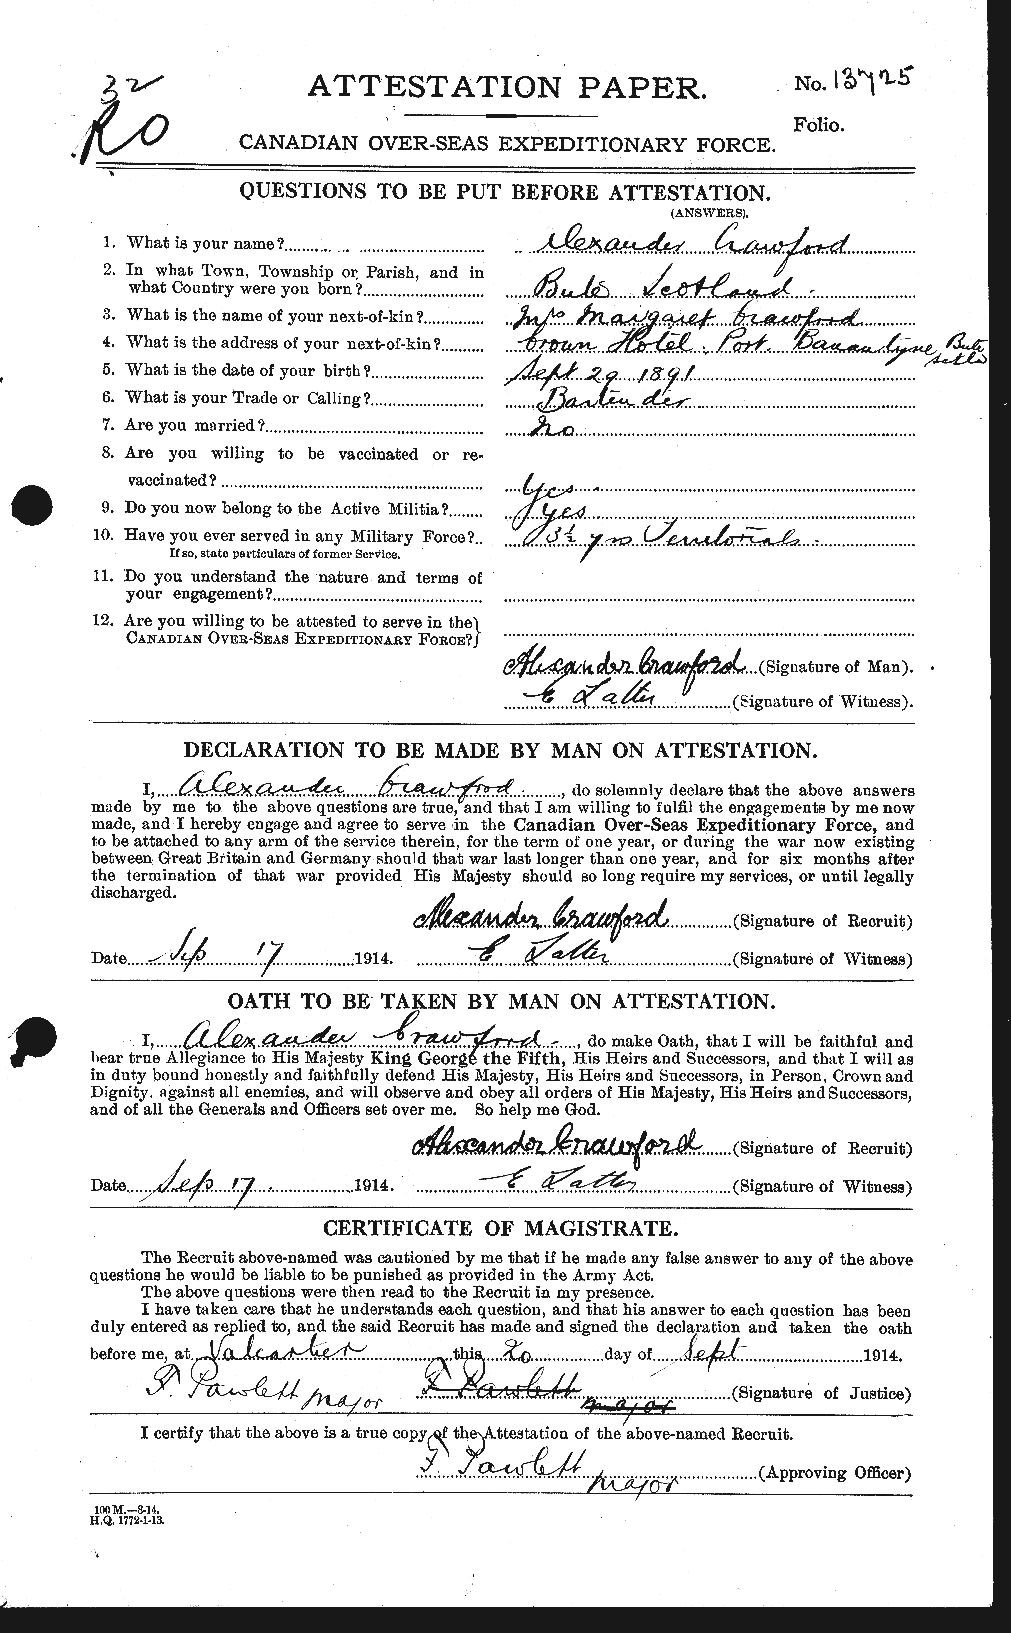 Dossiers du Personnel de la Première Guerre mondiale - CEC 060960a